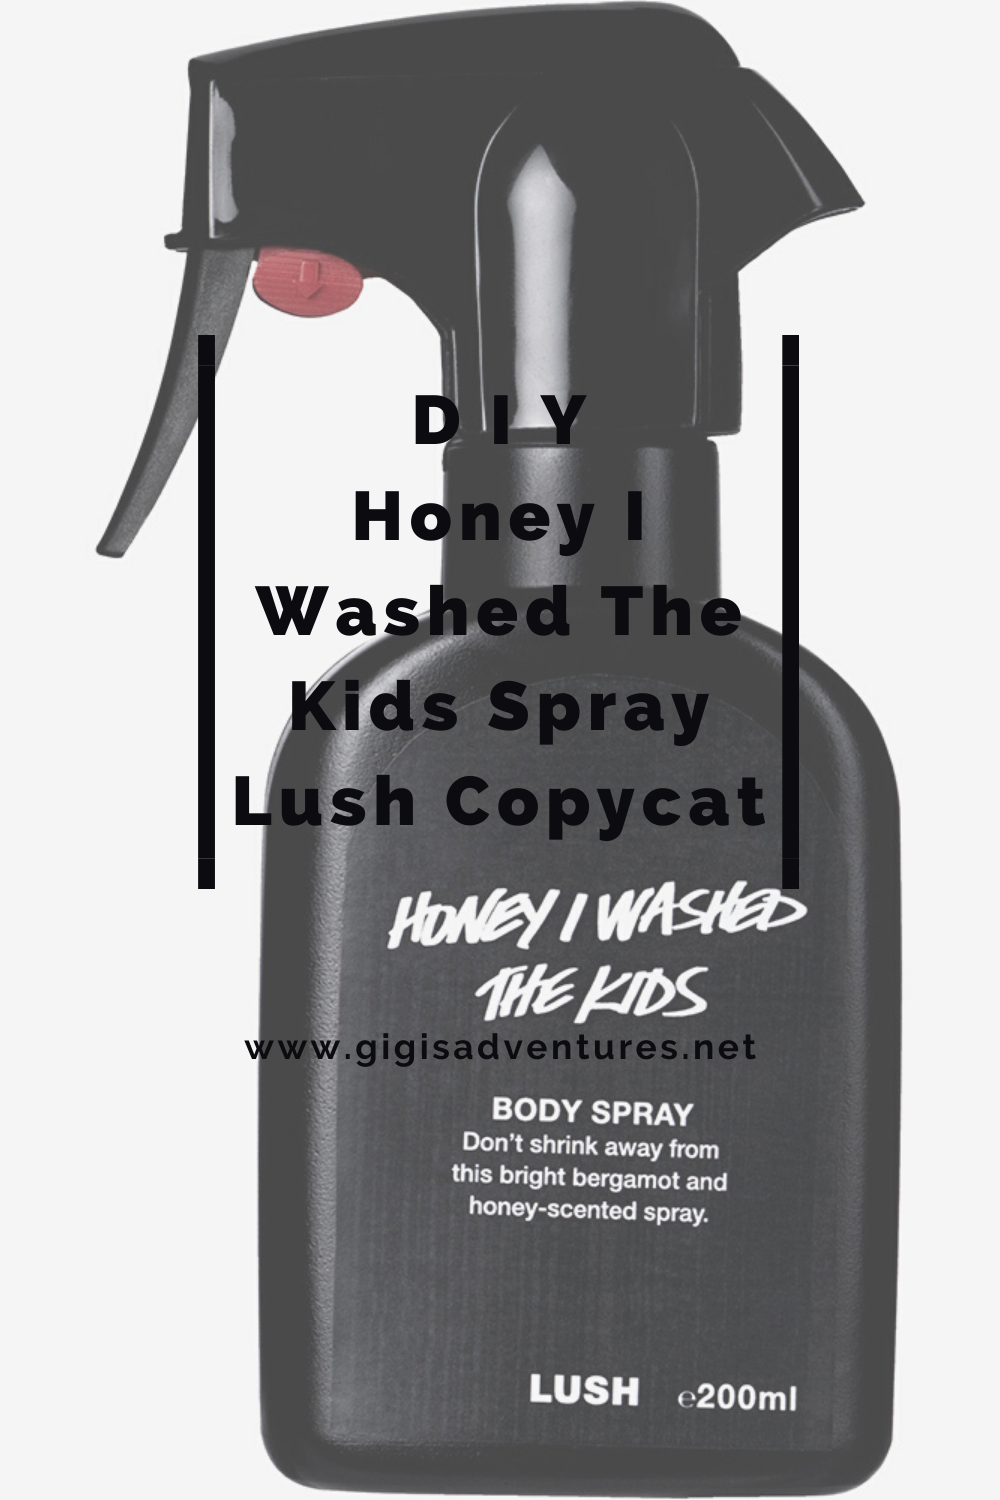 DIY Lush Honey I Washed The Kids Body Spray Copycat Recipe